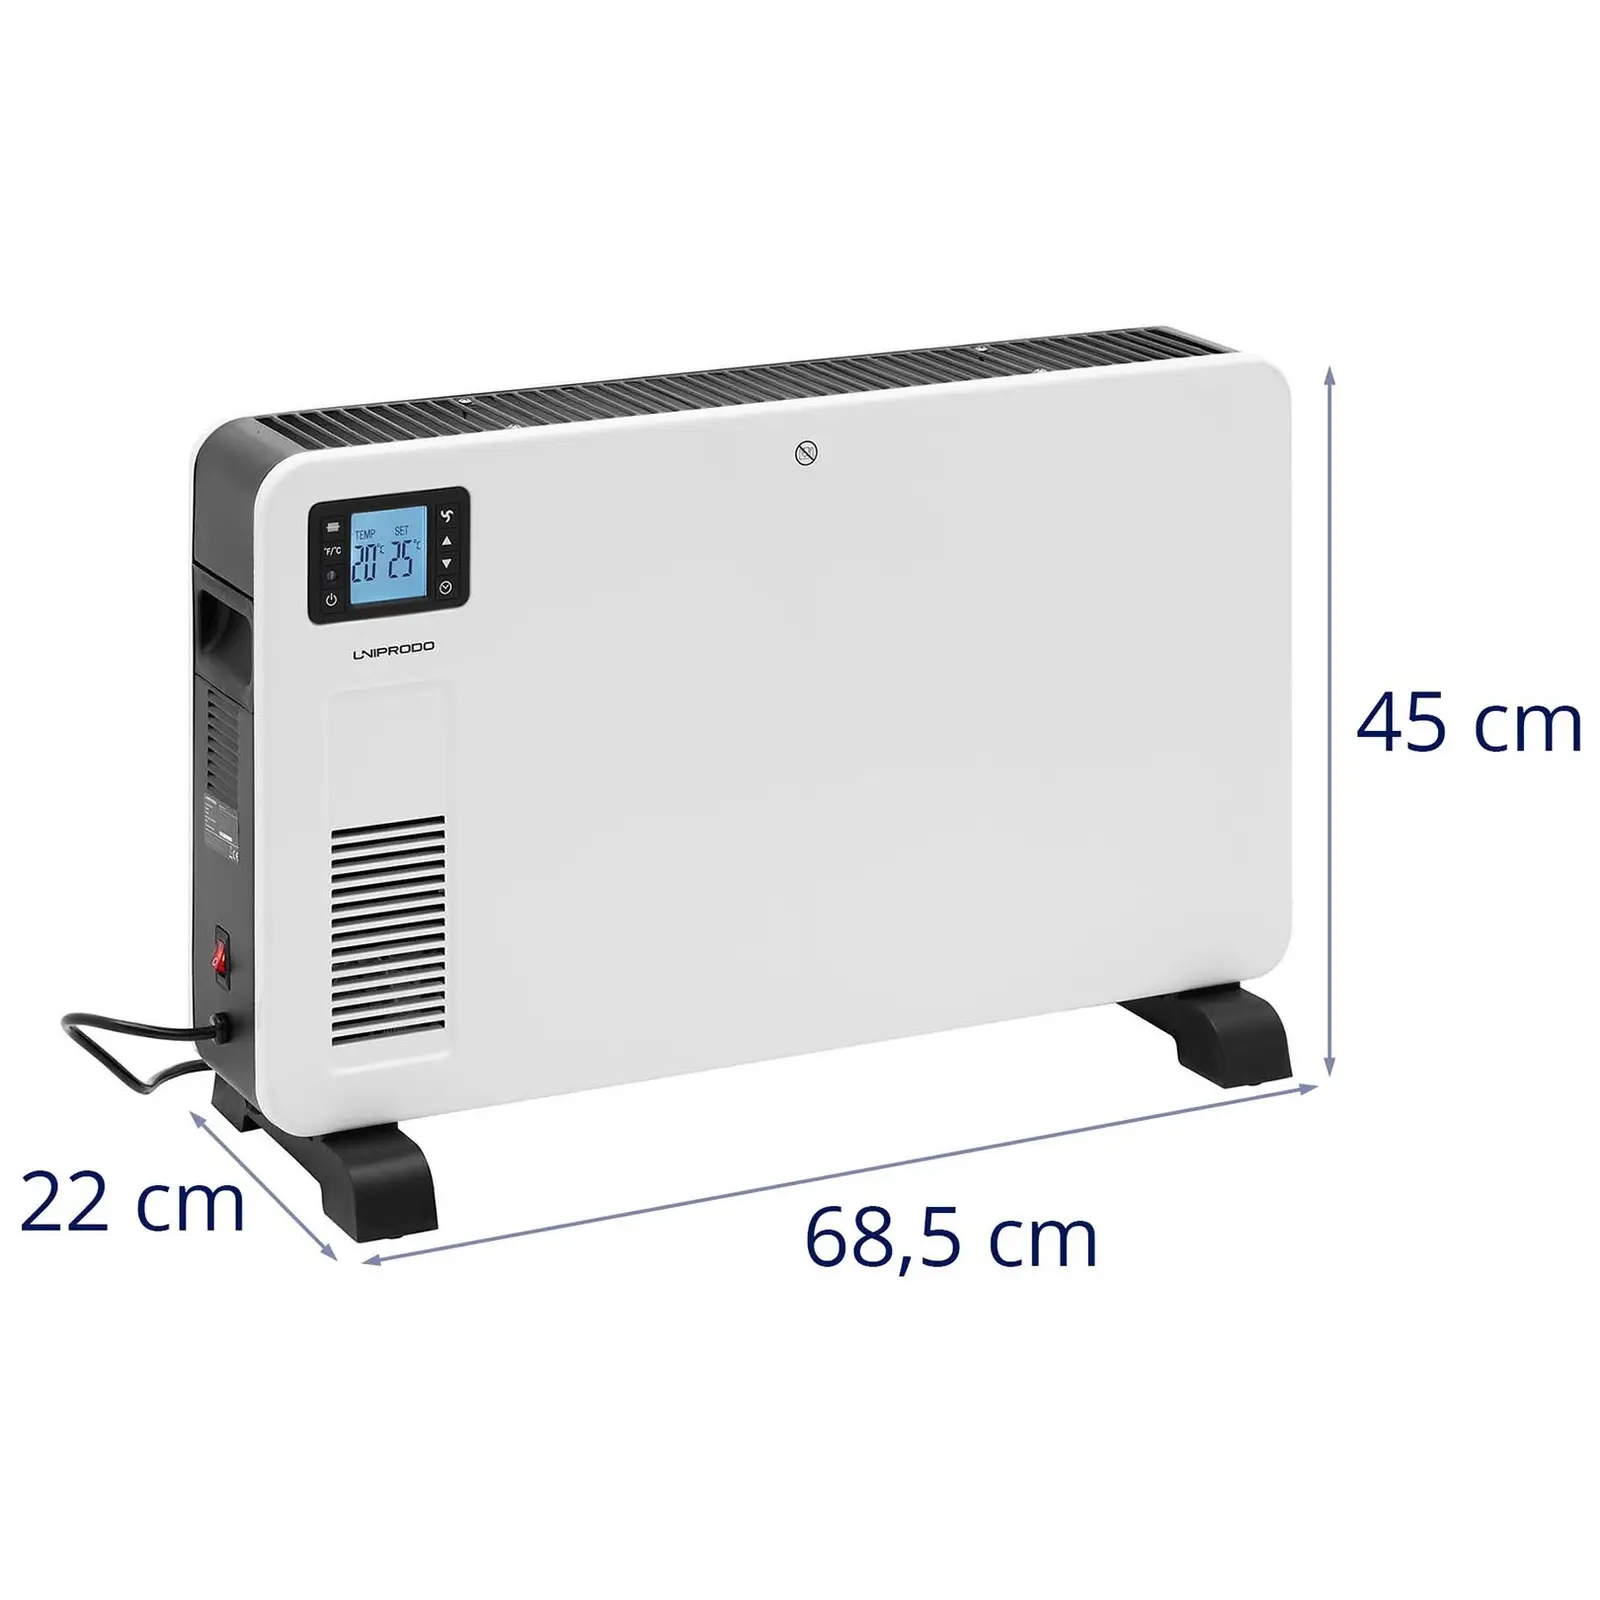 Konvektorvarme - for 25 m² - 2300 W - timer - LCD - fjernkontroll